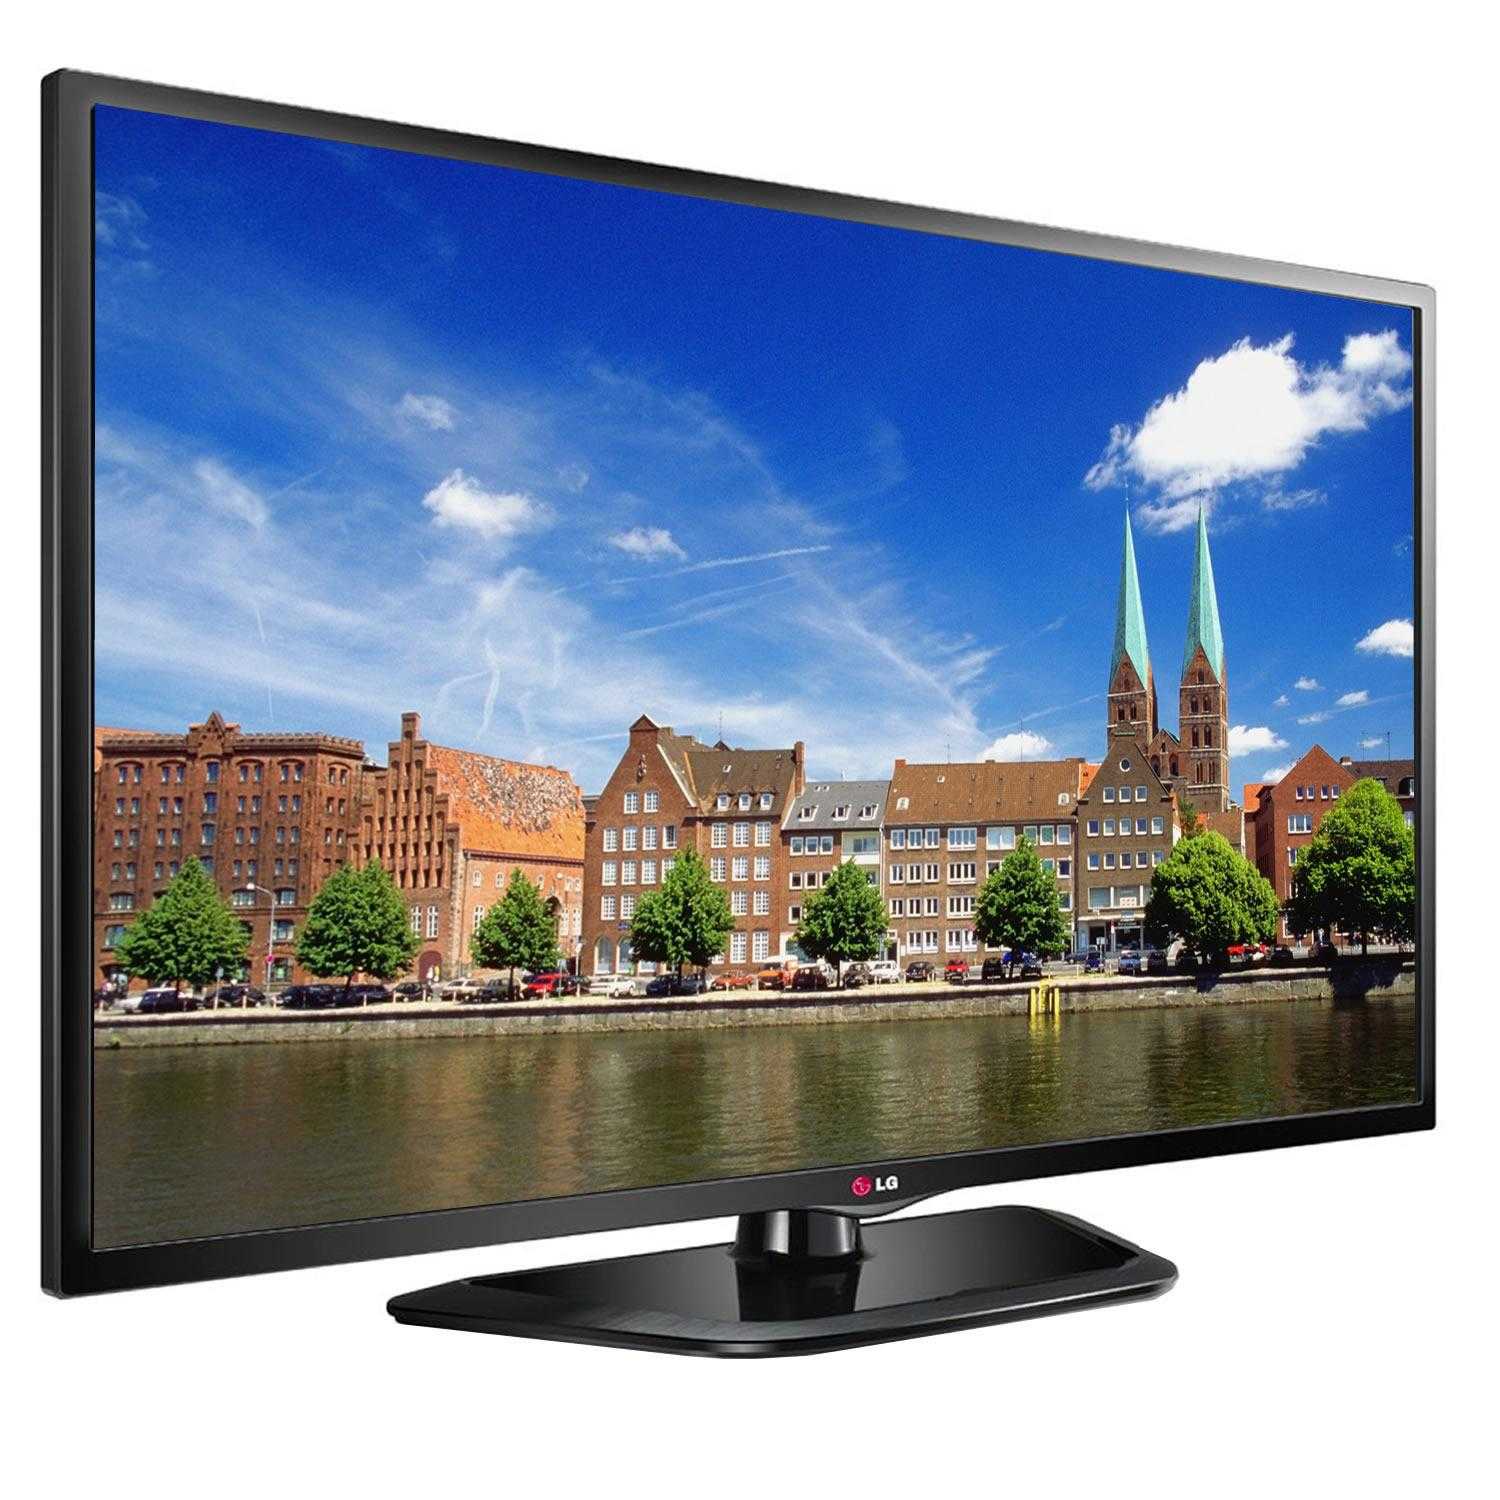 Жк телевизор 47" lg 47ln548c — купить, цена и характеристики, отзывы